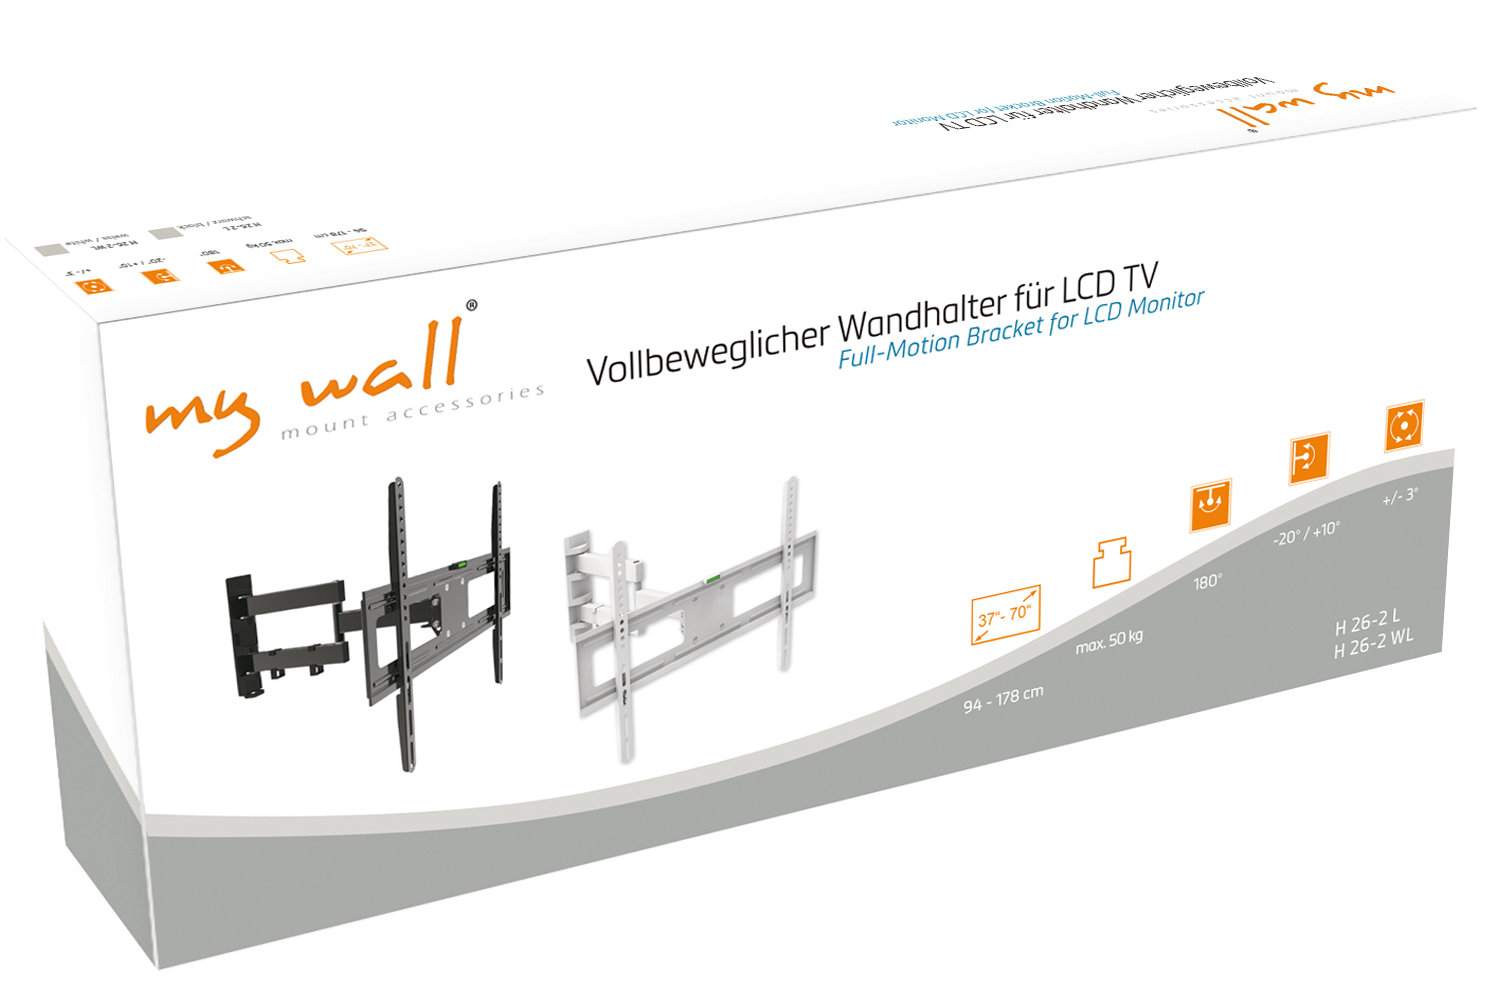 Vollbeweglicher Wandhalter für LCD TV My Wall H26-2W-/bilder/big/h26-2,h26-2wl_karton.jpg